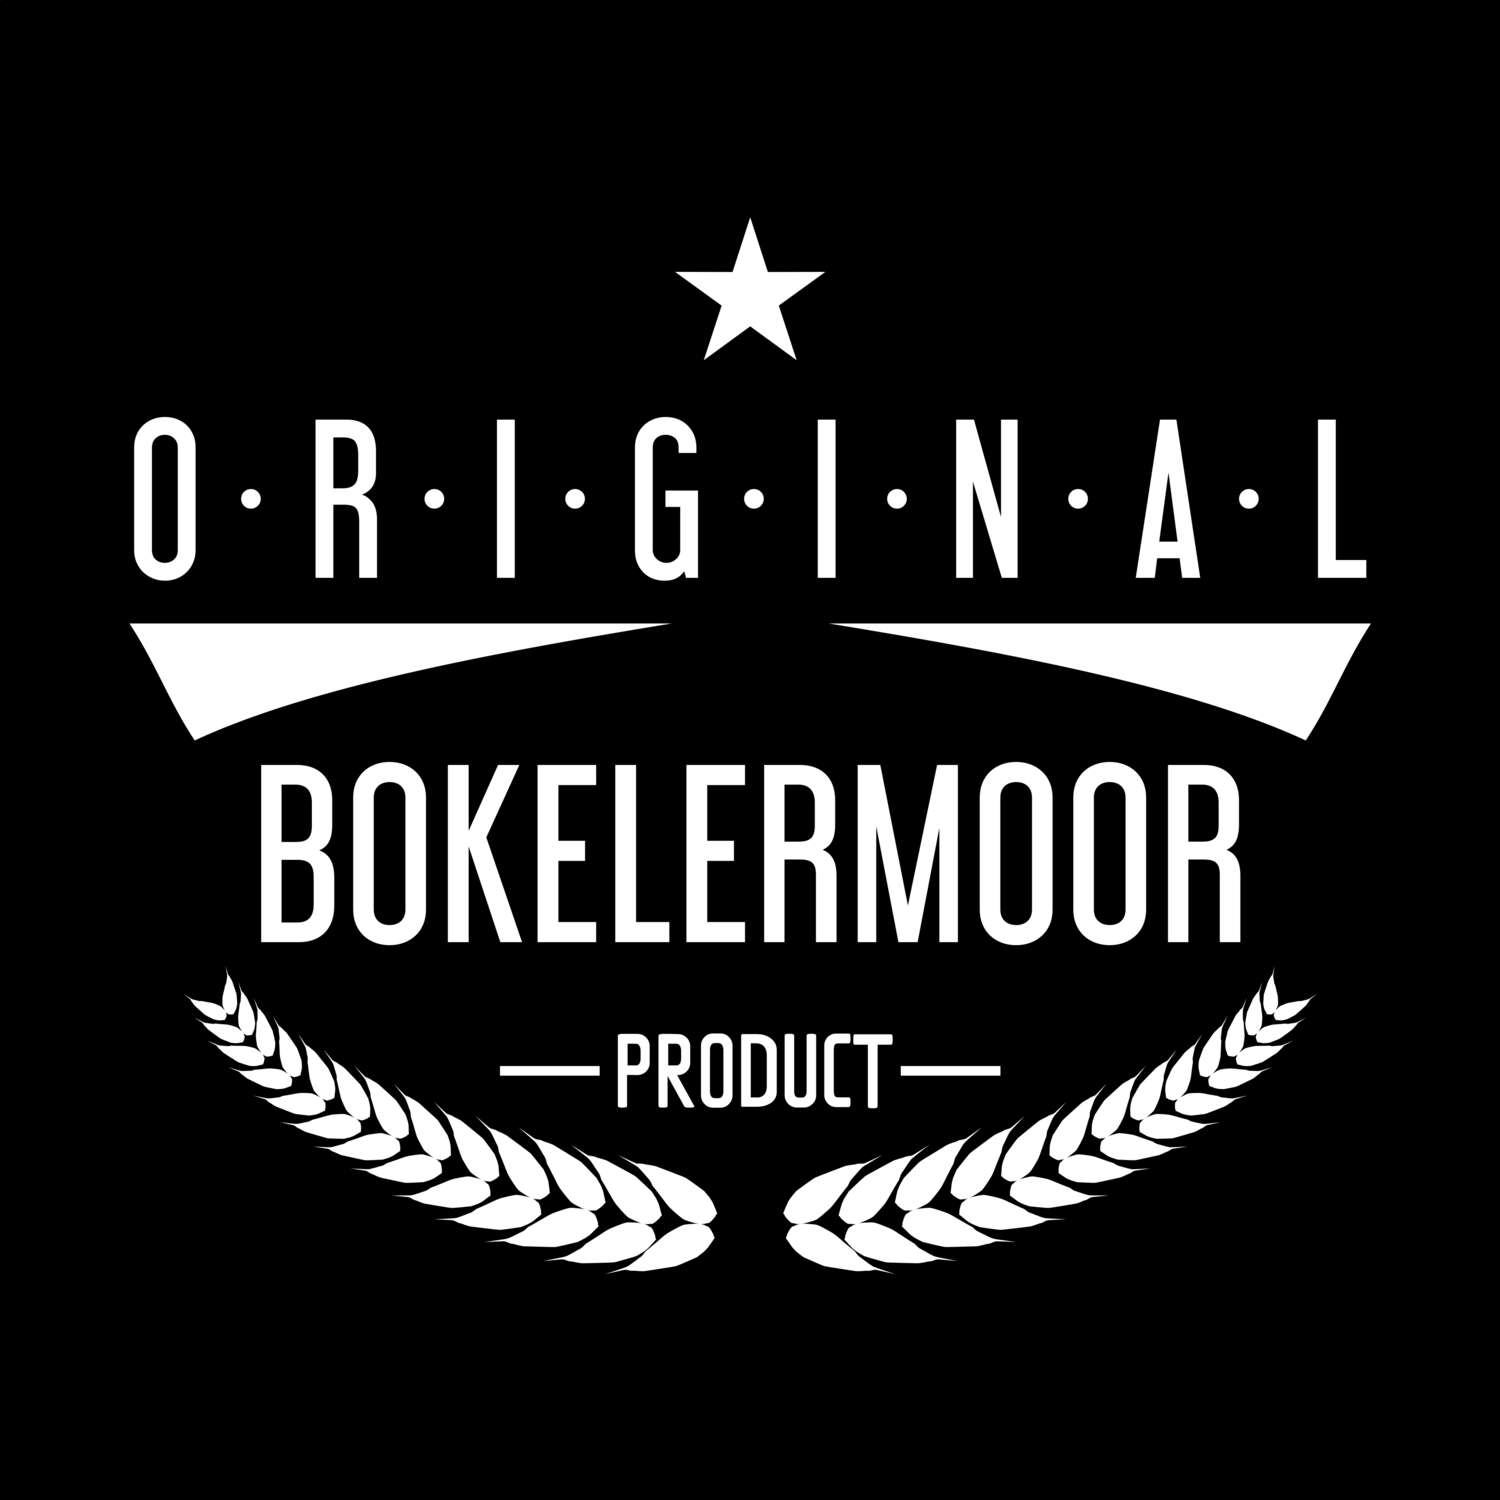 Bokelermoor T-Shirt »Original Product«